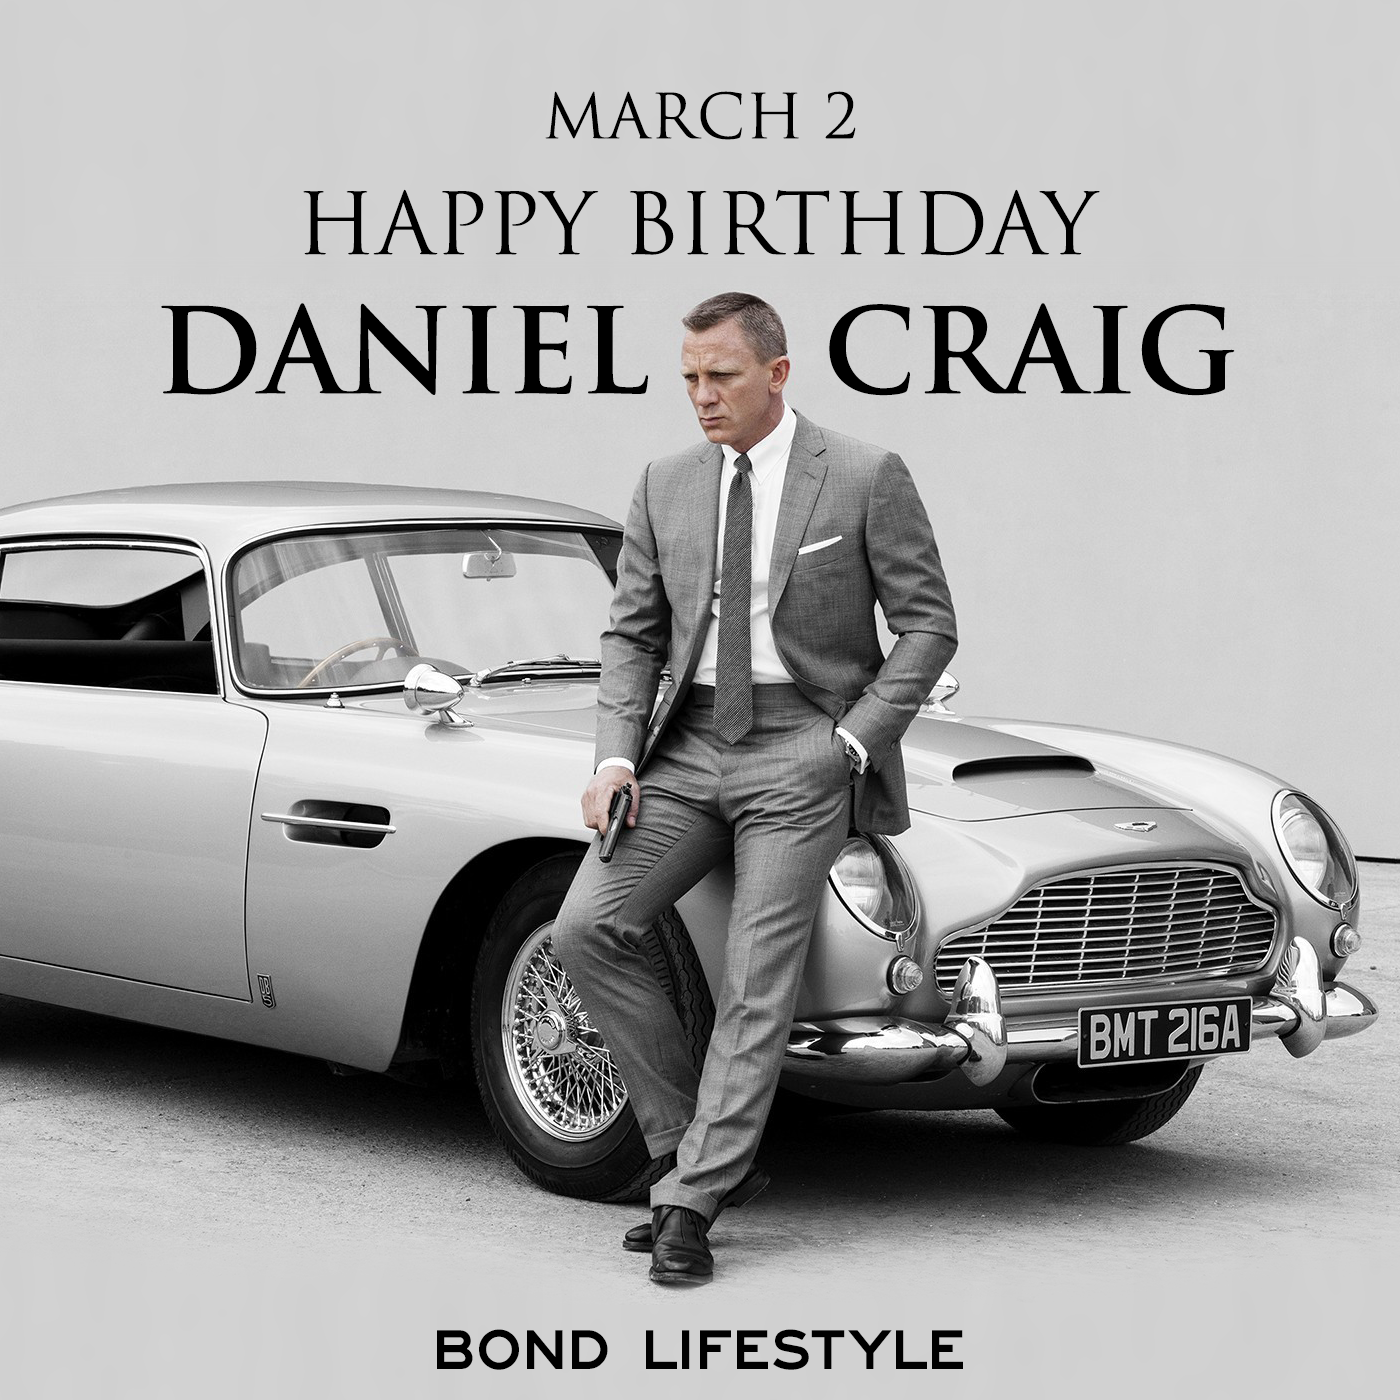 Happy Birthday, Daniel Craig! 